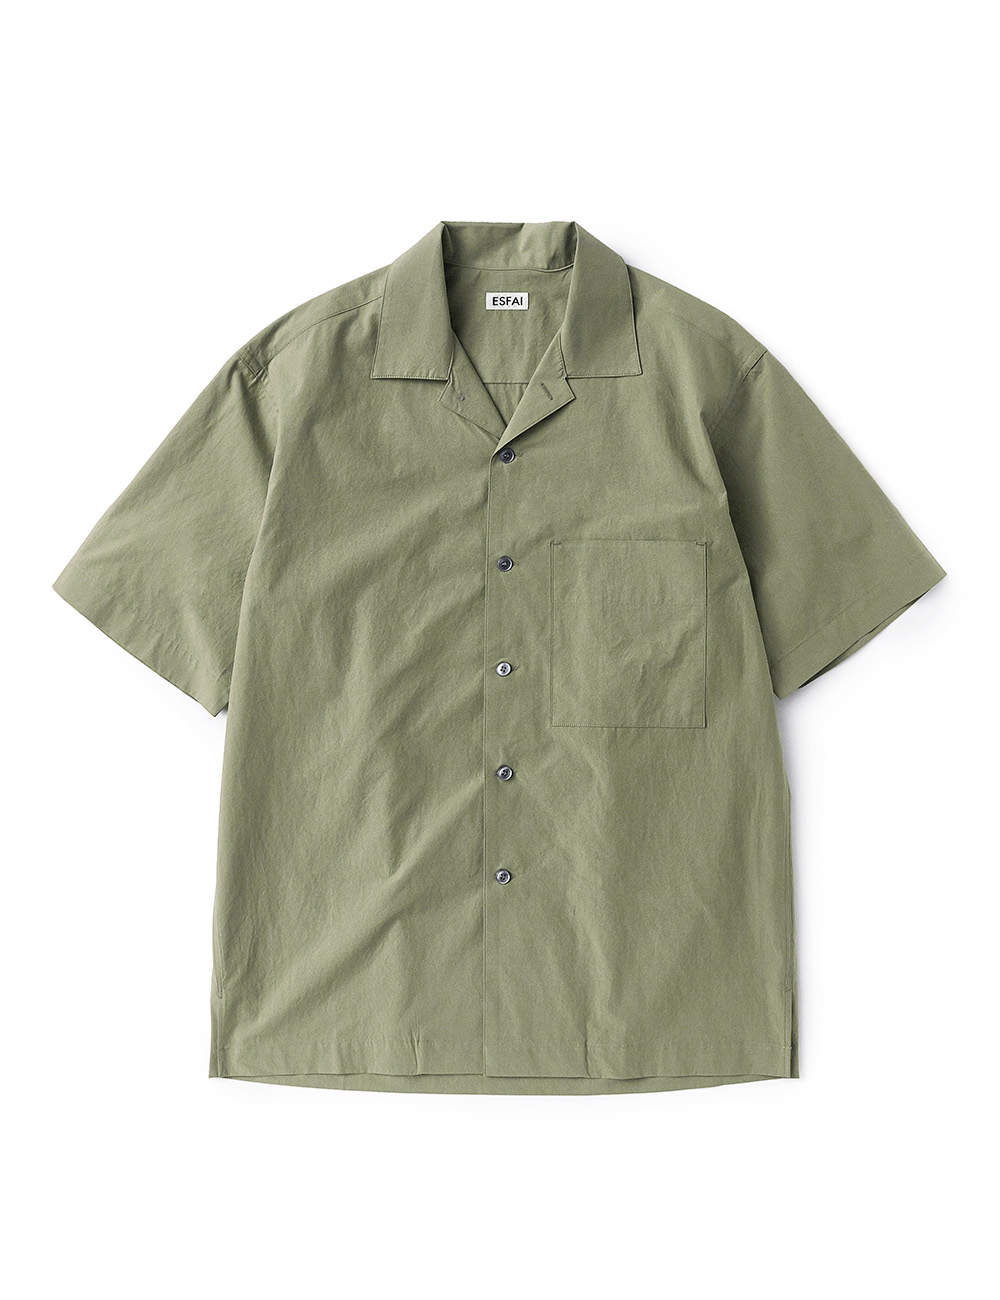 [ESFAI] sue02 summer standard shirts (Green)